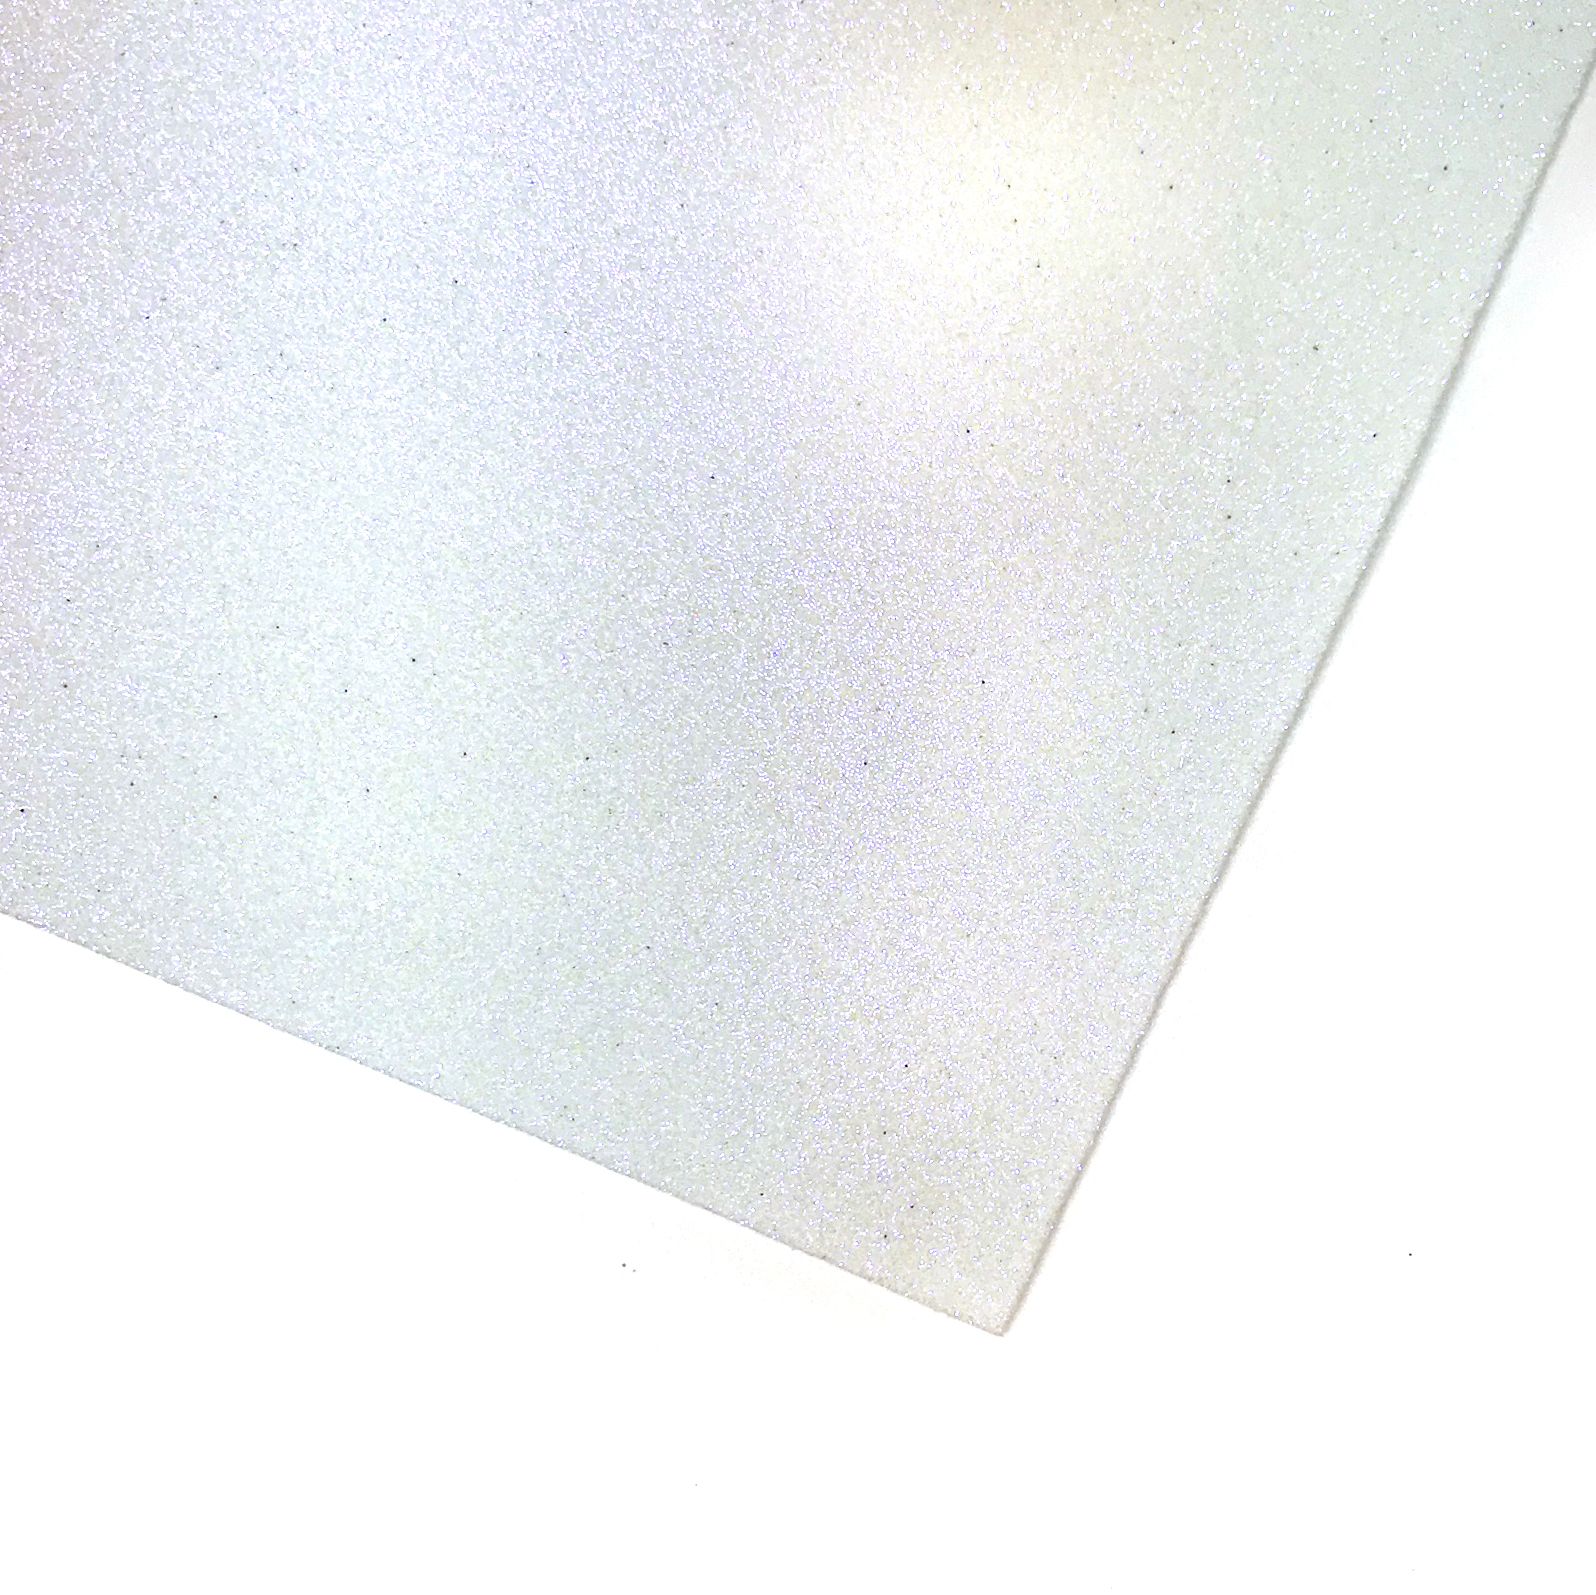 Мерцающий фоамиран Белый с голубым блеском 60х70, 1.5мм (1 шт) | Шкатулка идей